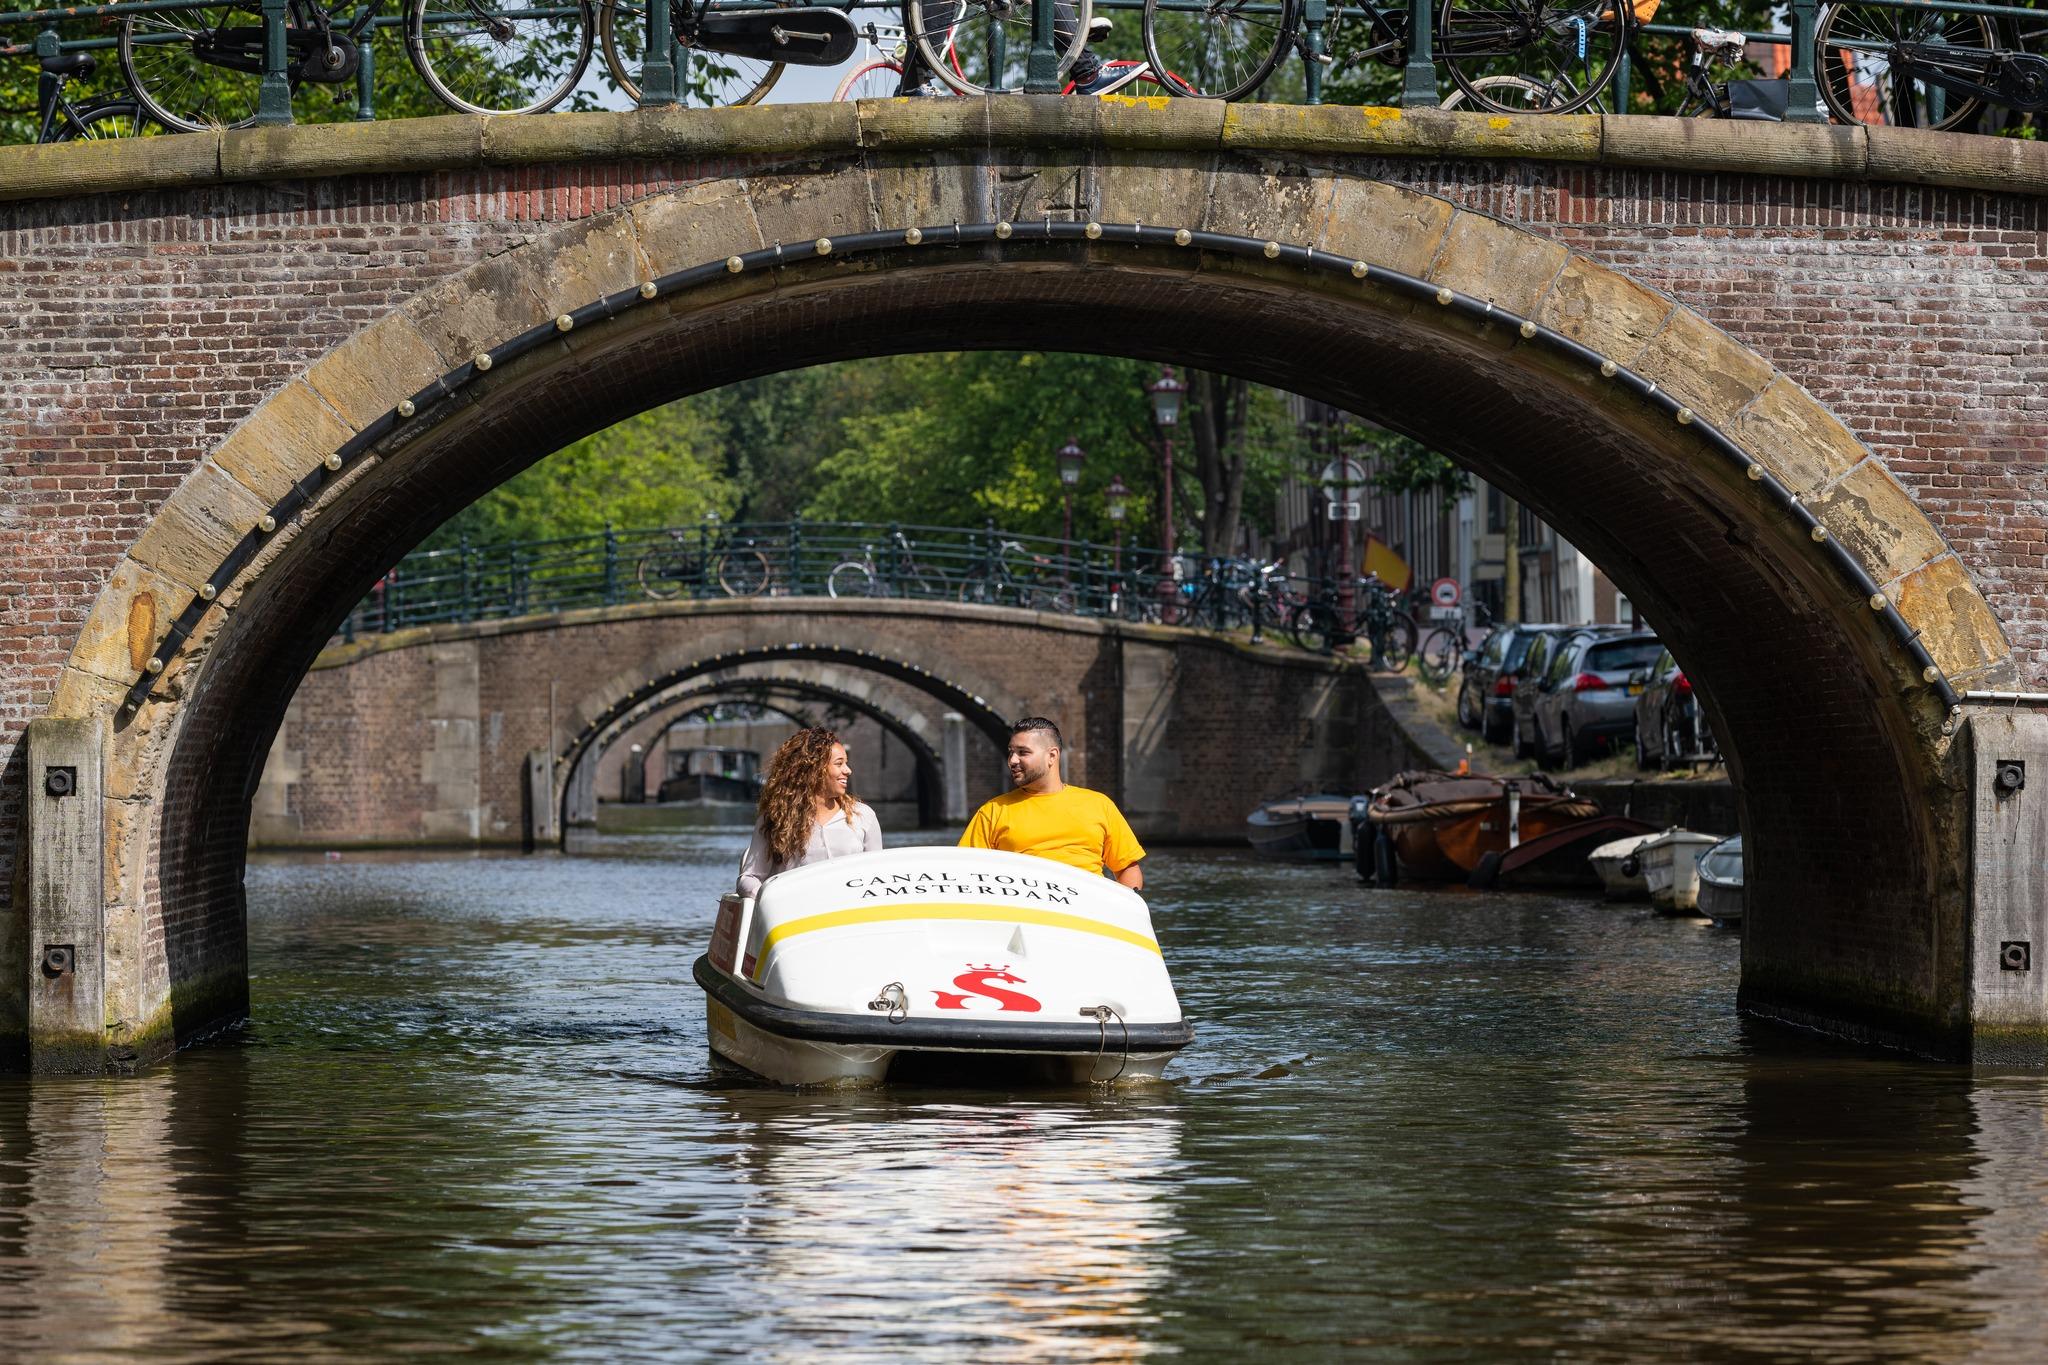 Huur een waterfiets door de grachten van Amsterdam (60 min)